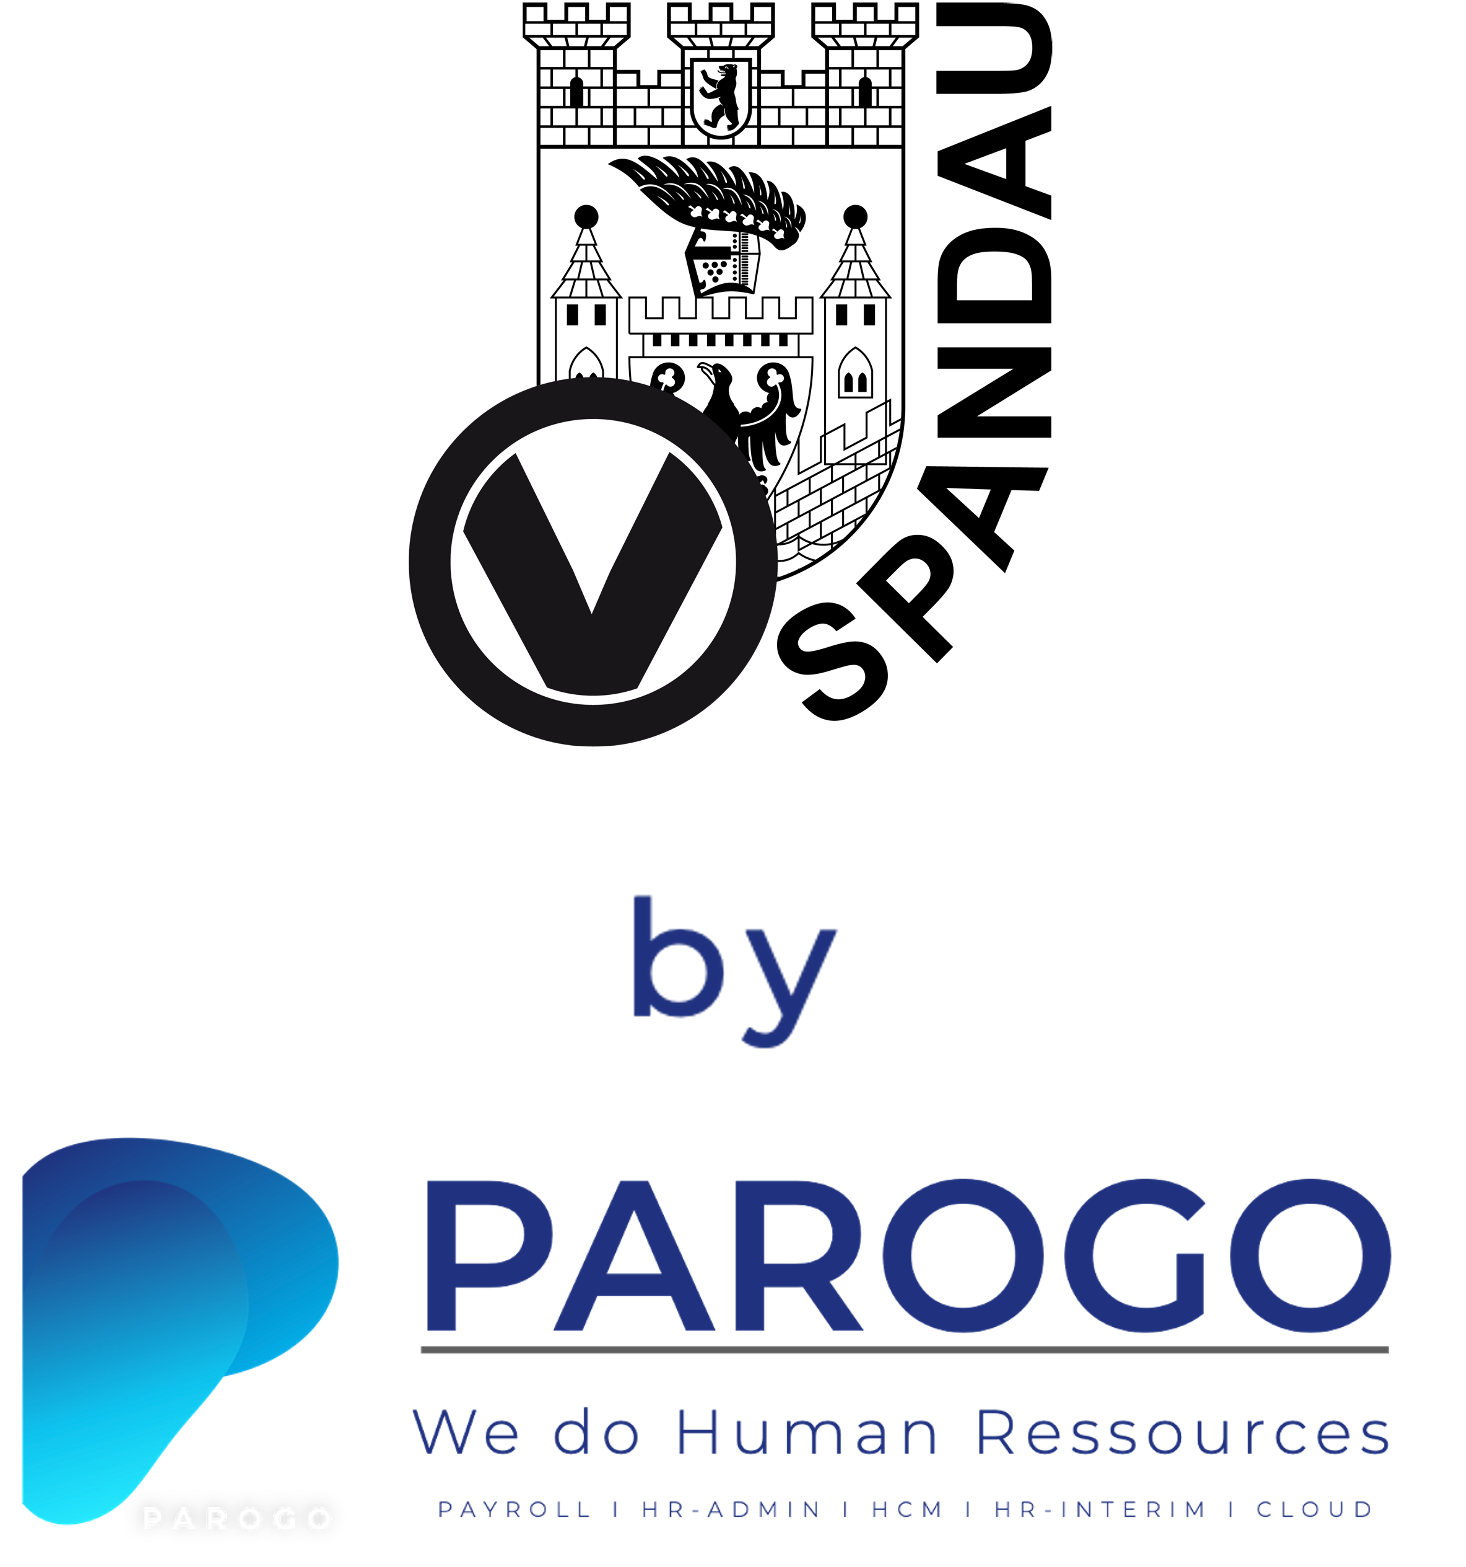 VfV by PAROGO